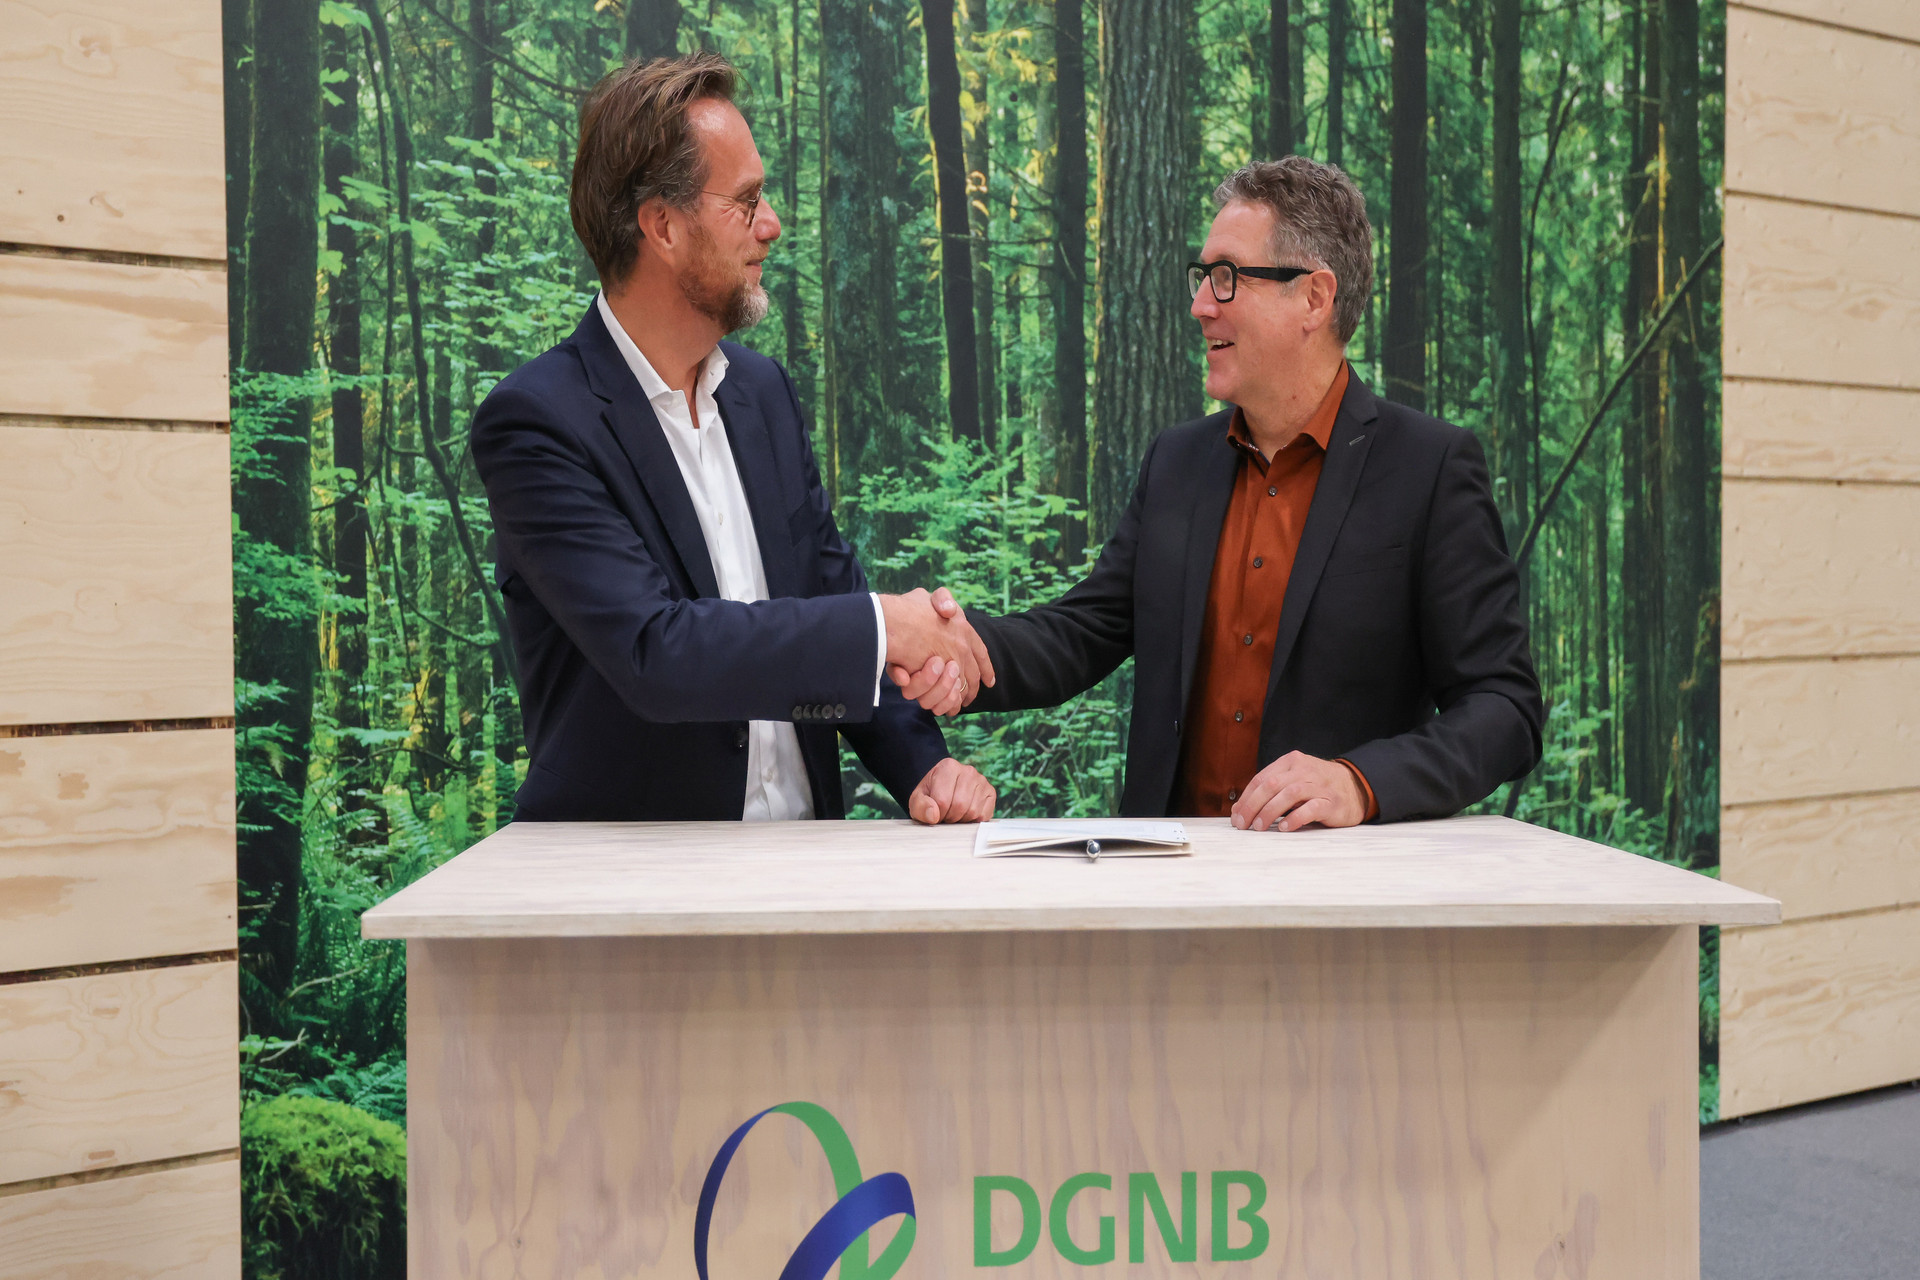 Handschlag zur Kooperationsunterzeichnung der DGNB und der HafenCity Hamburg im Rahmen der Expo Real 2022